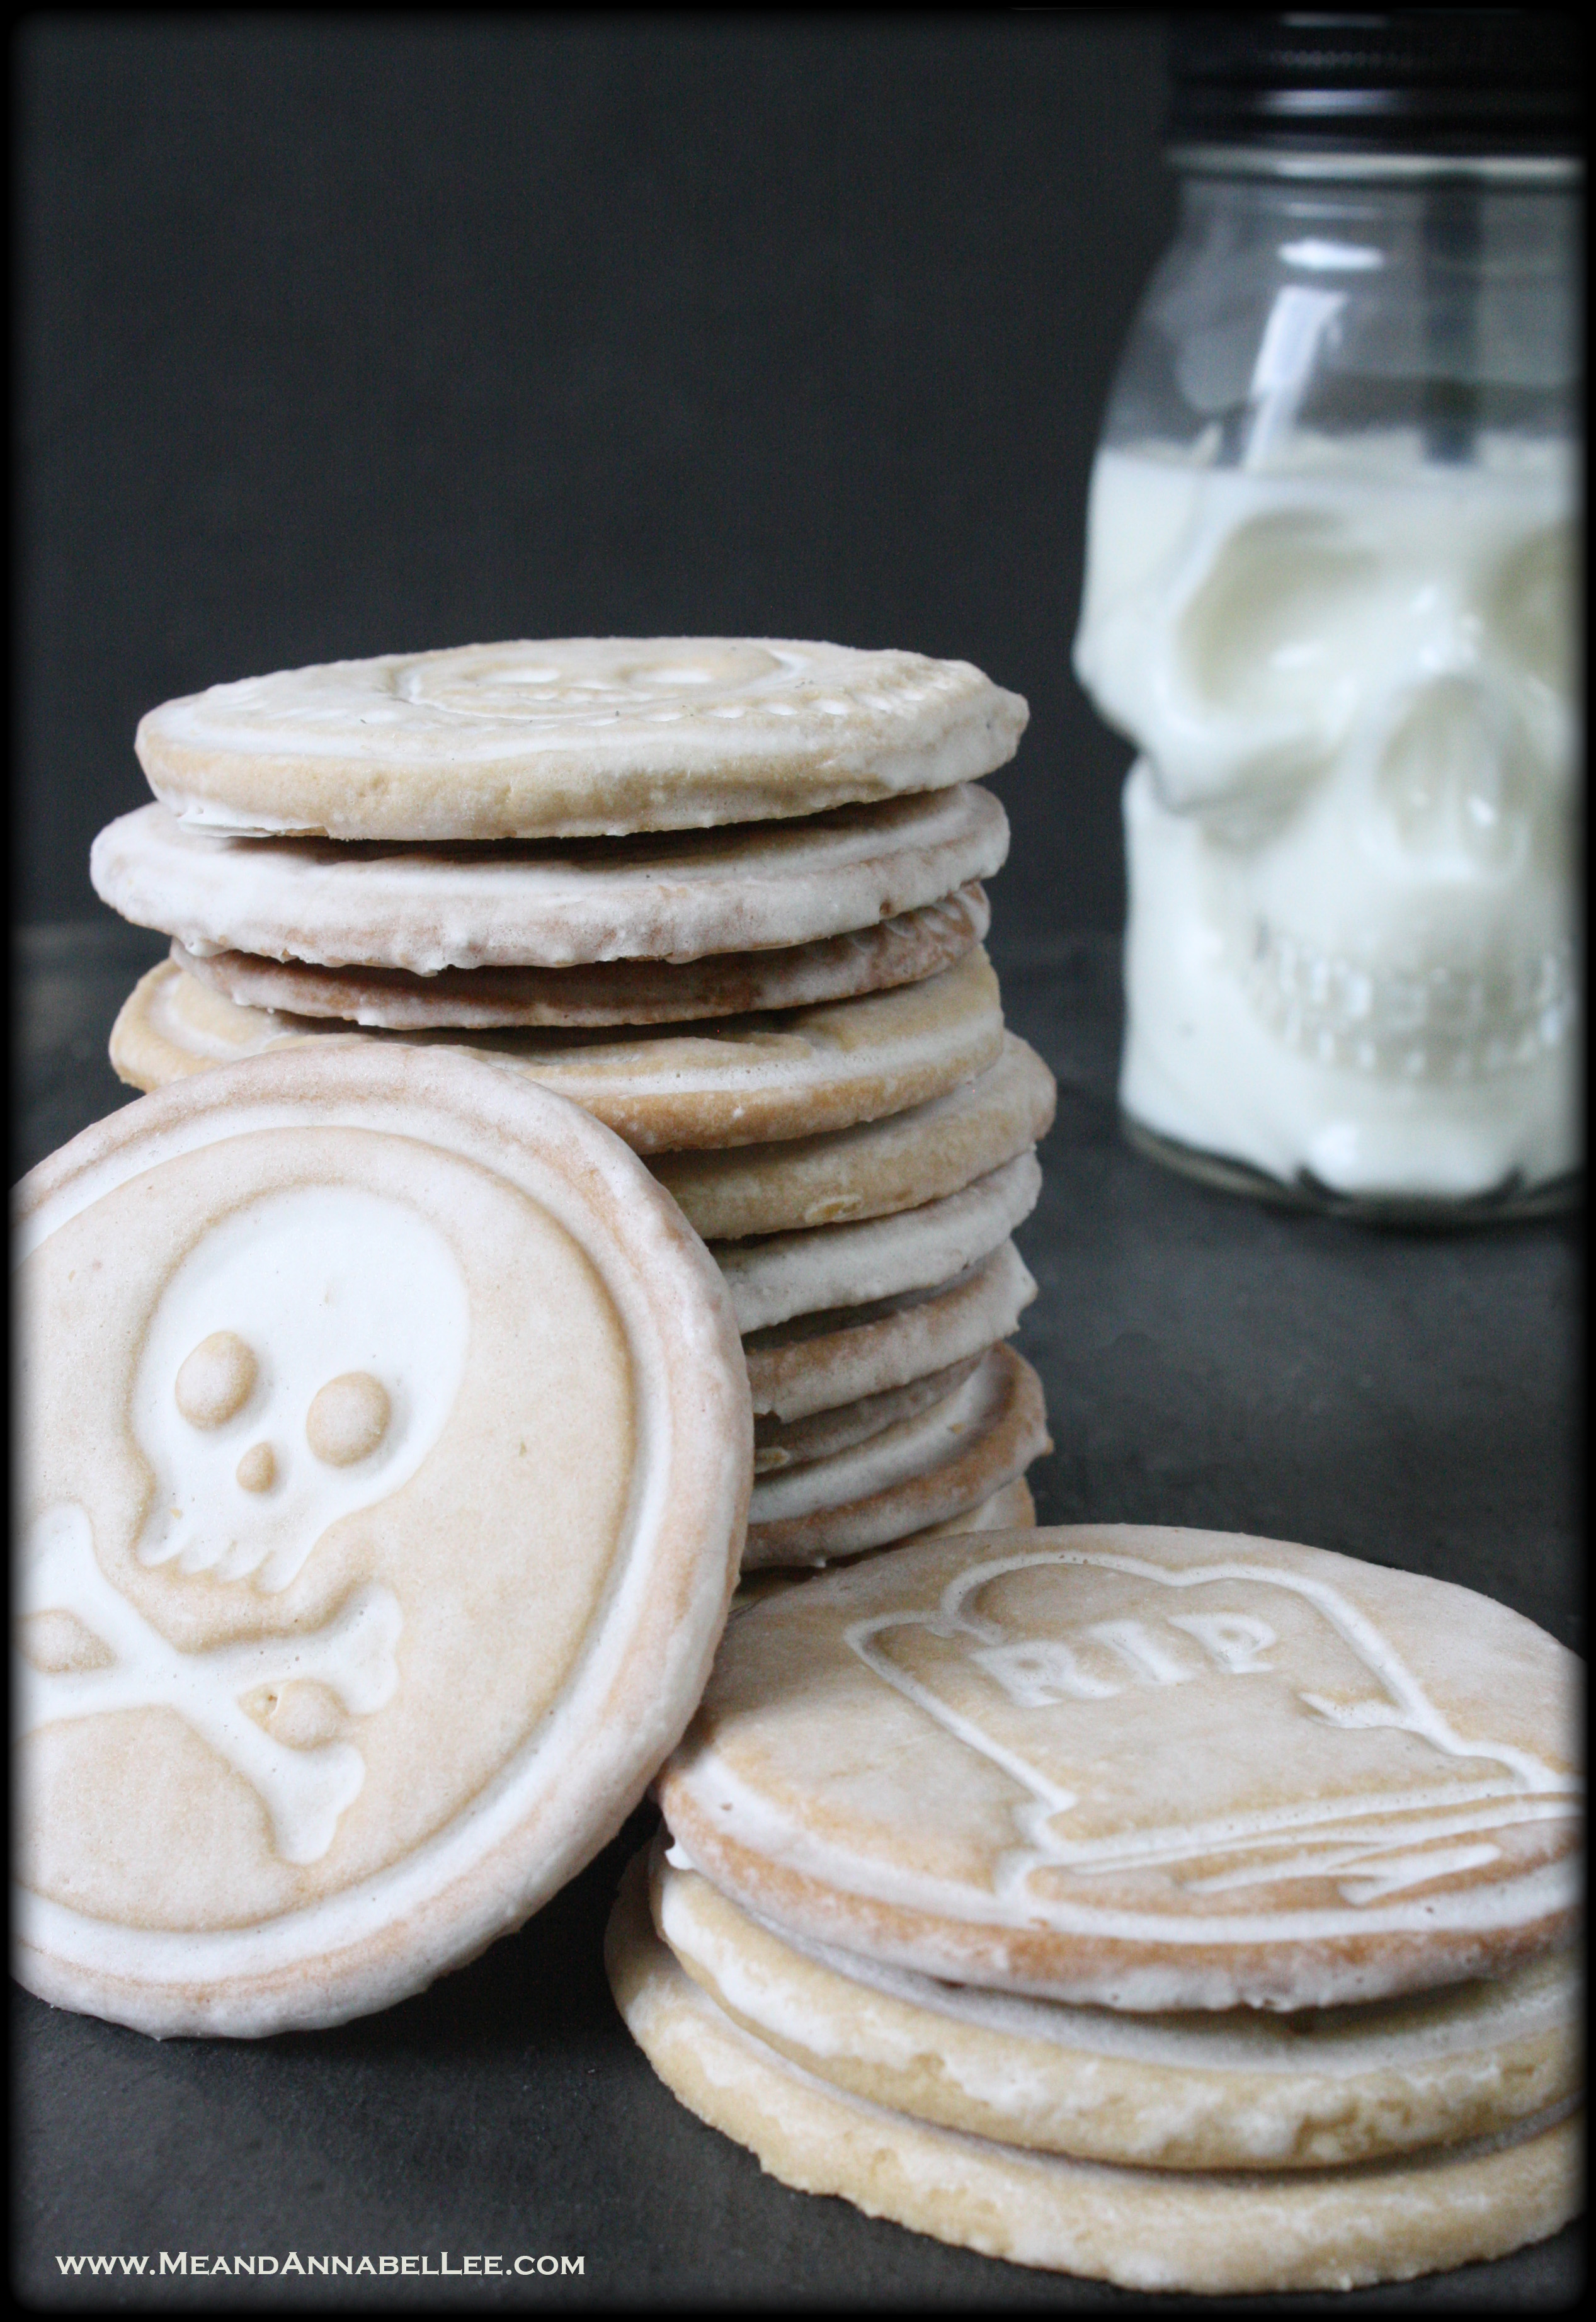 Halloween Stamped Cookies - Nordic Ware